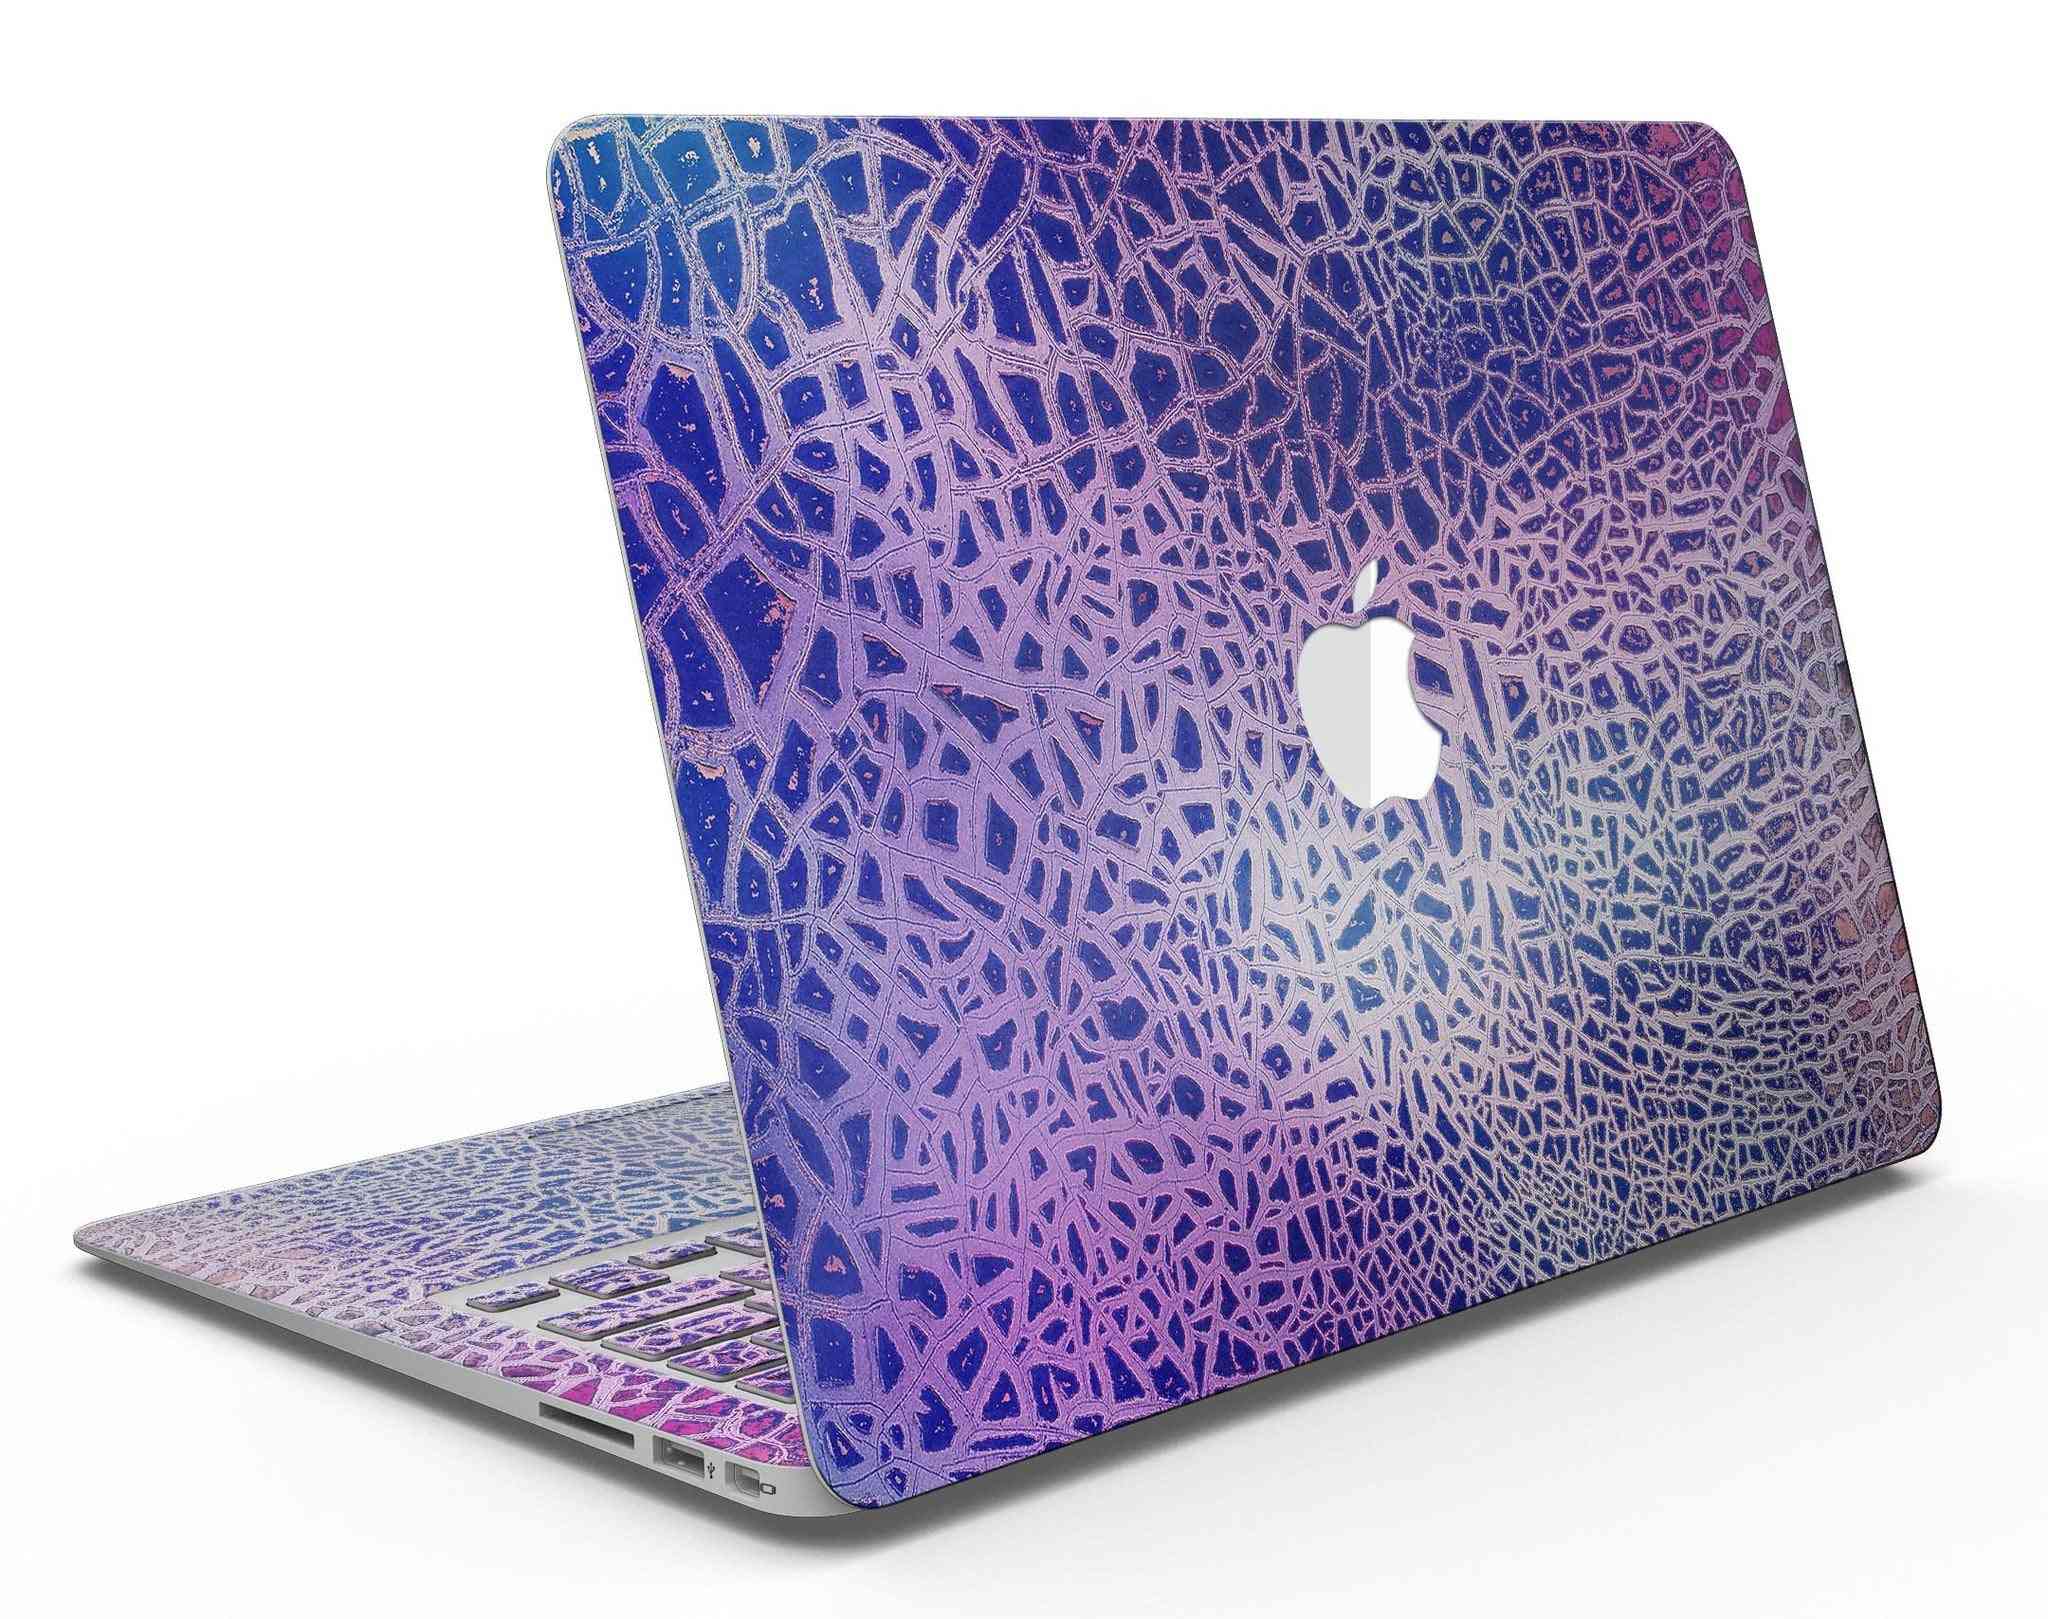 Cracked Purple Texture - Macbook Air Skin Kit